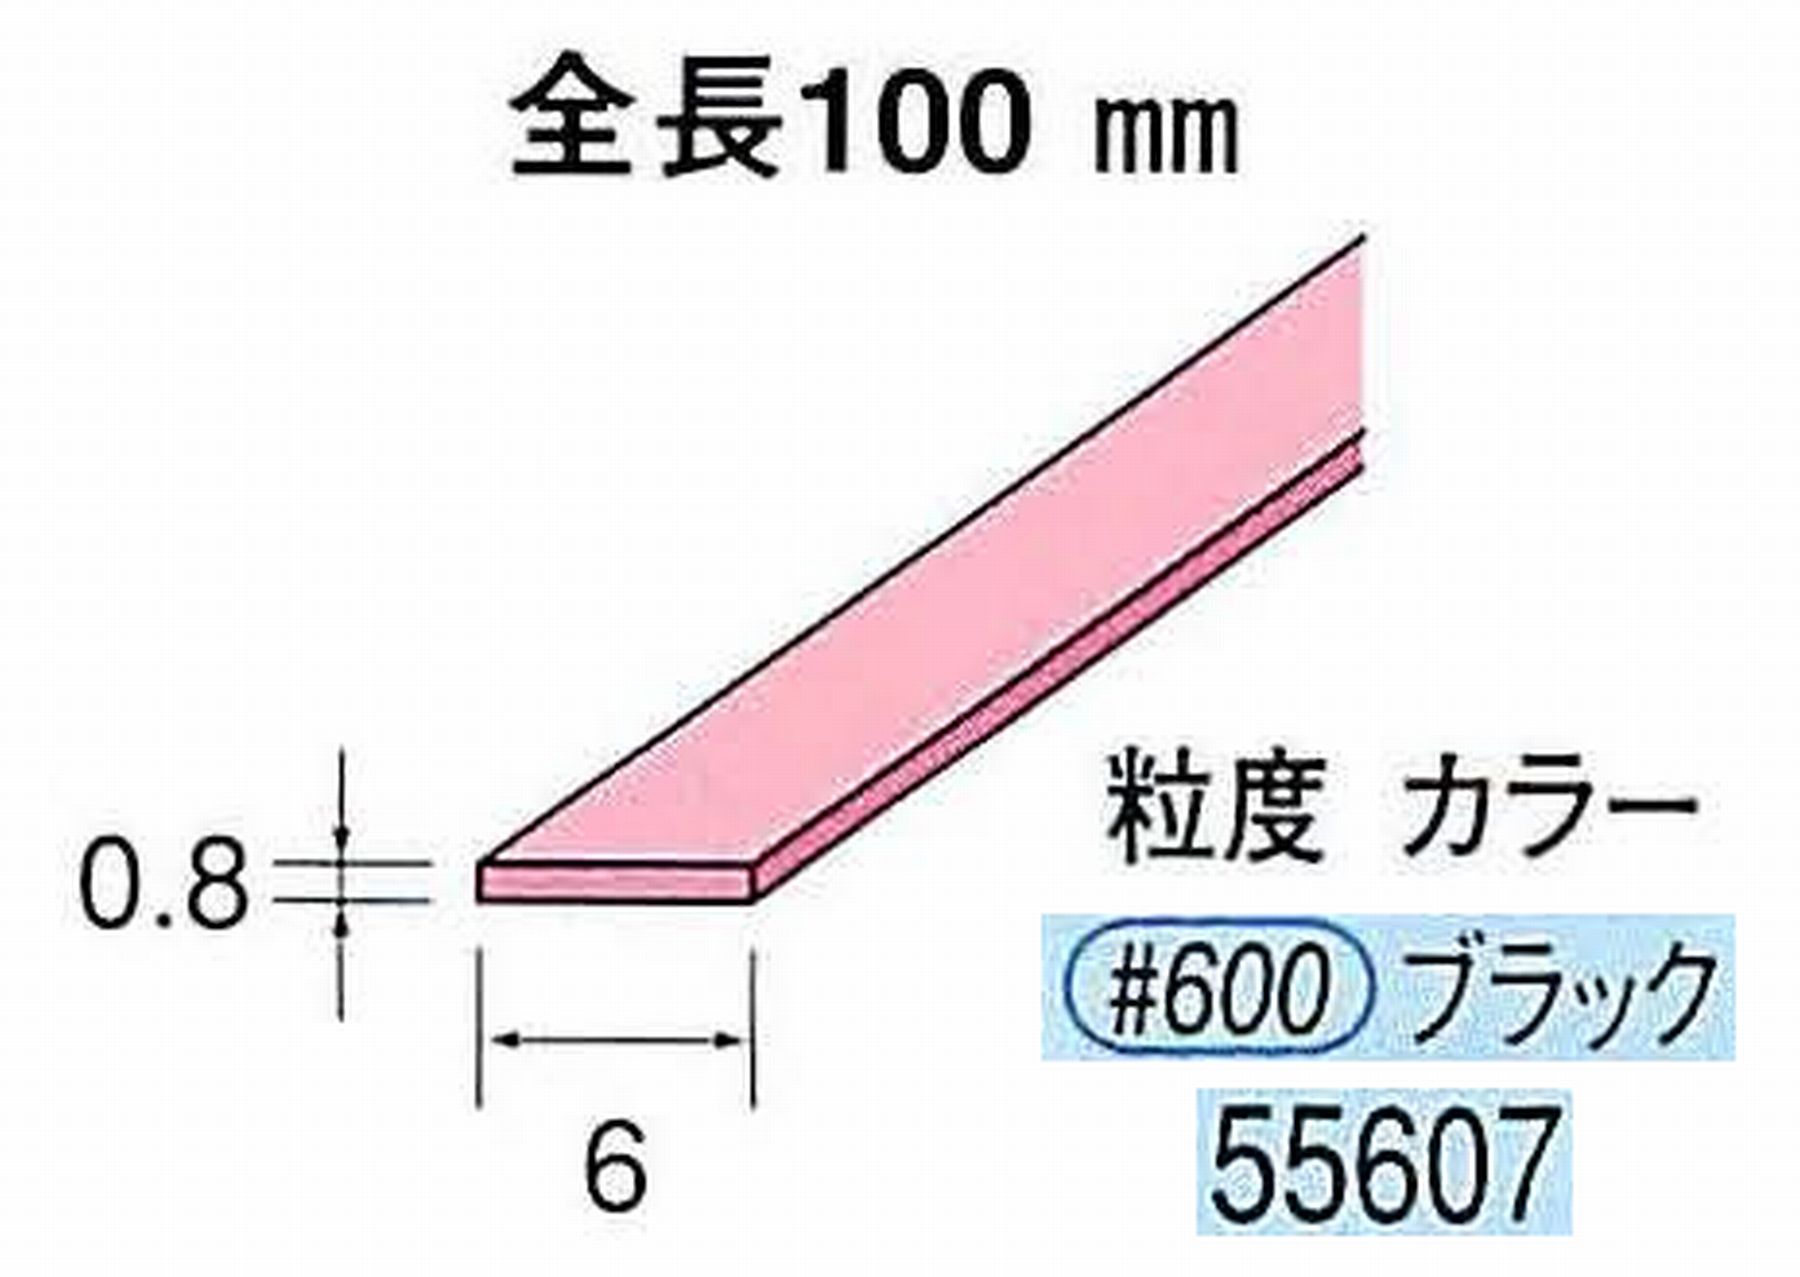 ナカニシ/NAKANISHI セラファイバー砥石 全長100mm ブラック 55607